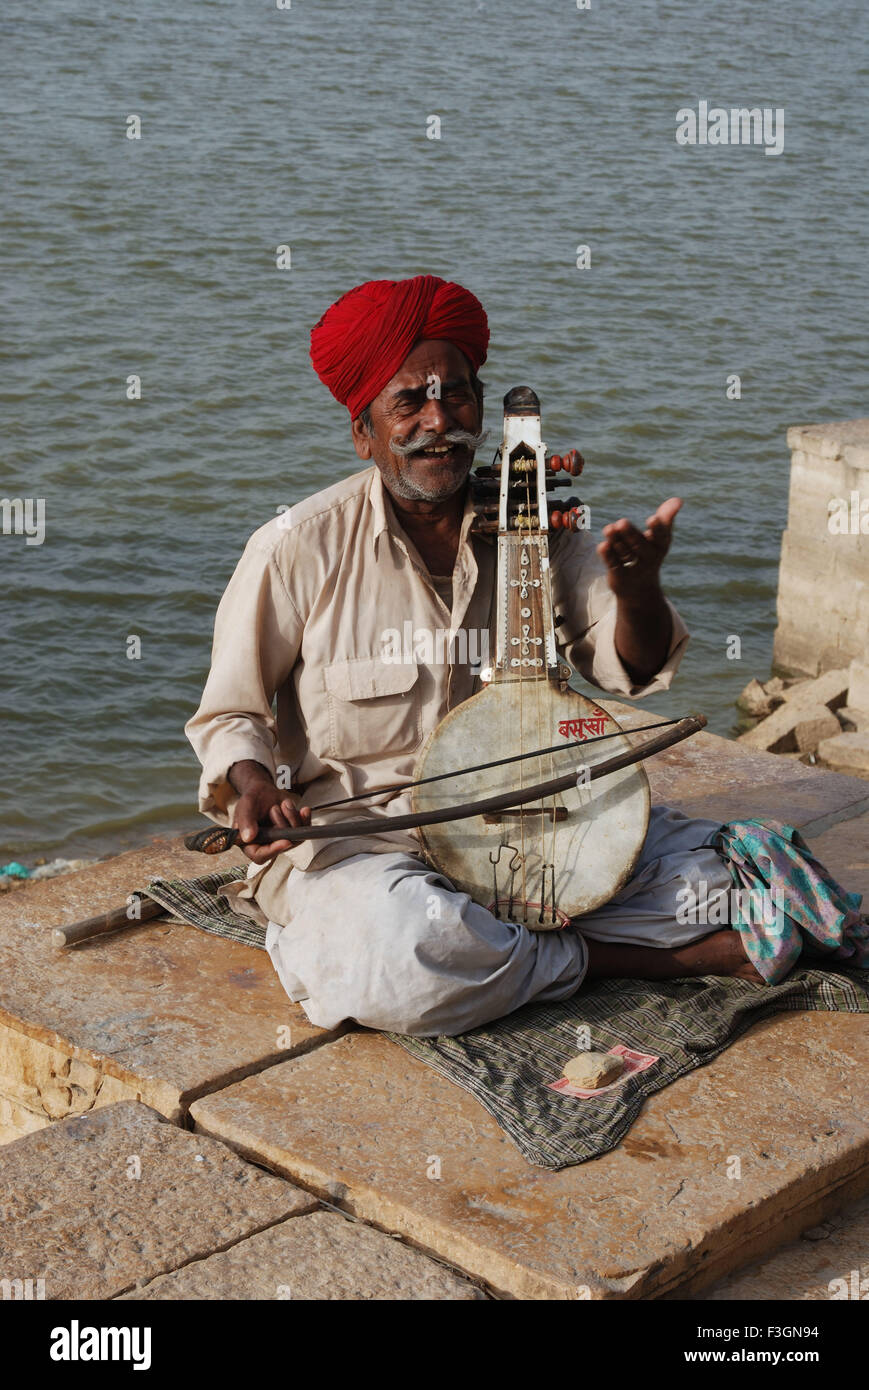 Folk singer chanter et jouer à des instruments de musique de Gadisar lake ; ; ; Inde Rajasthan Jaisalmer Banque D'Images